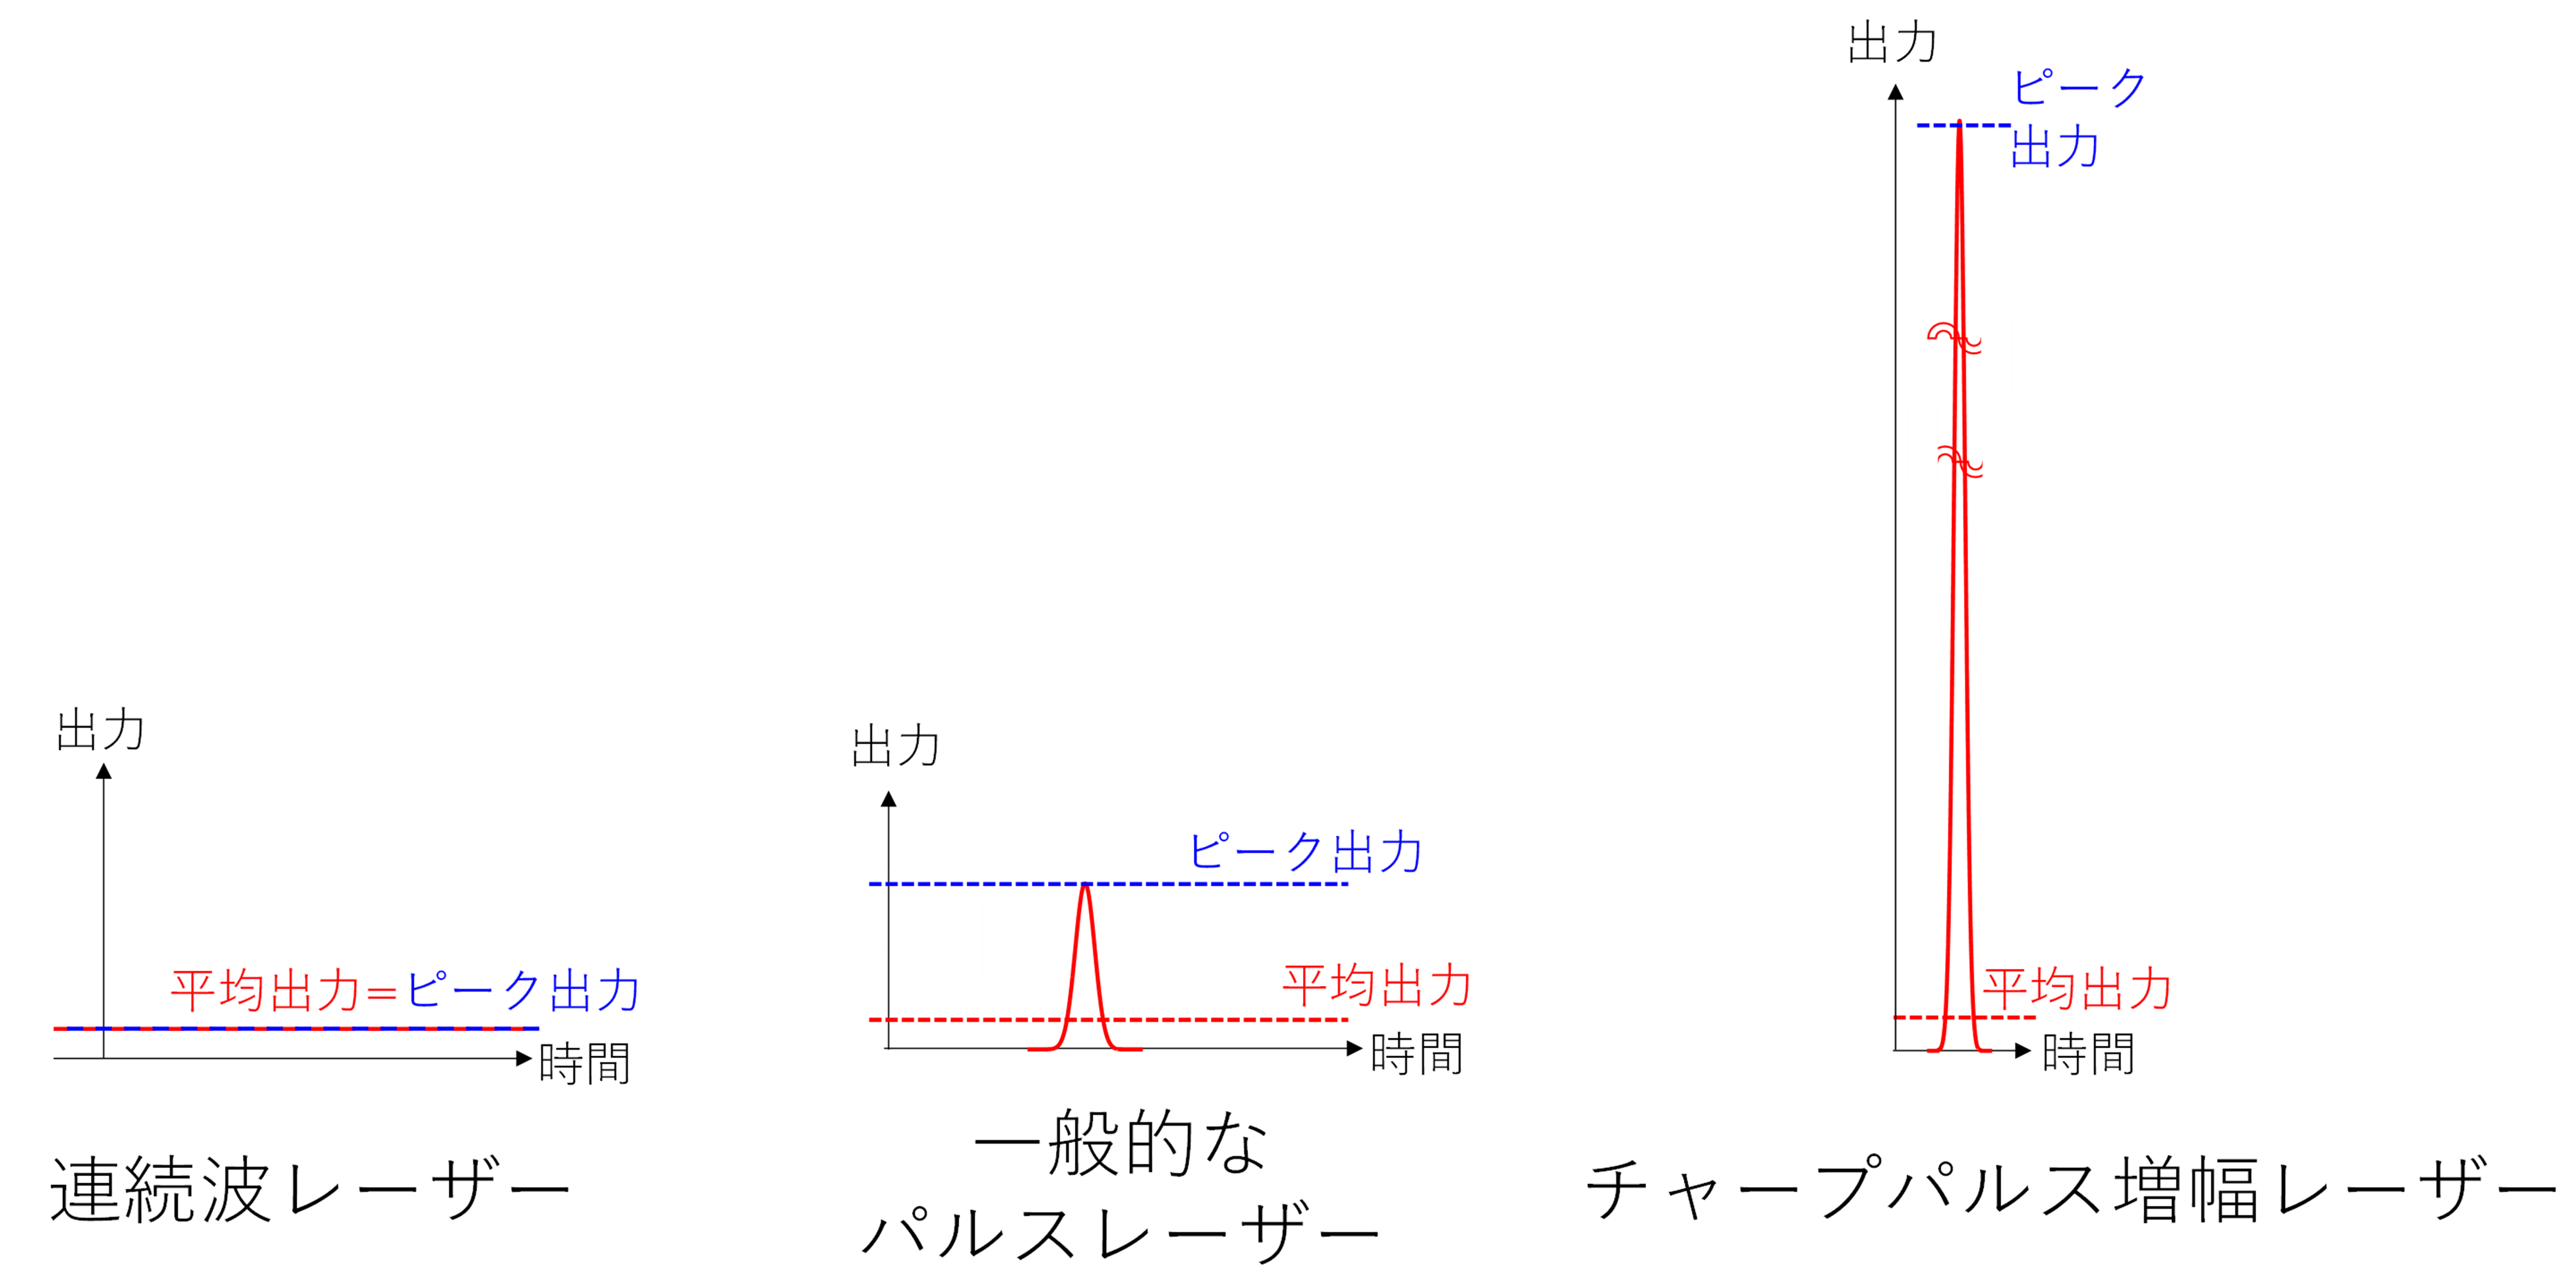 パルスレーザーのパルス時間と平均出力、ピーク出力の関係。